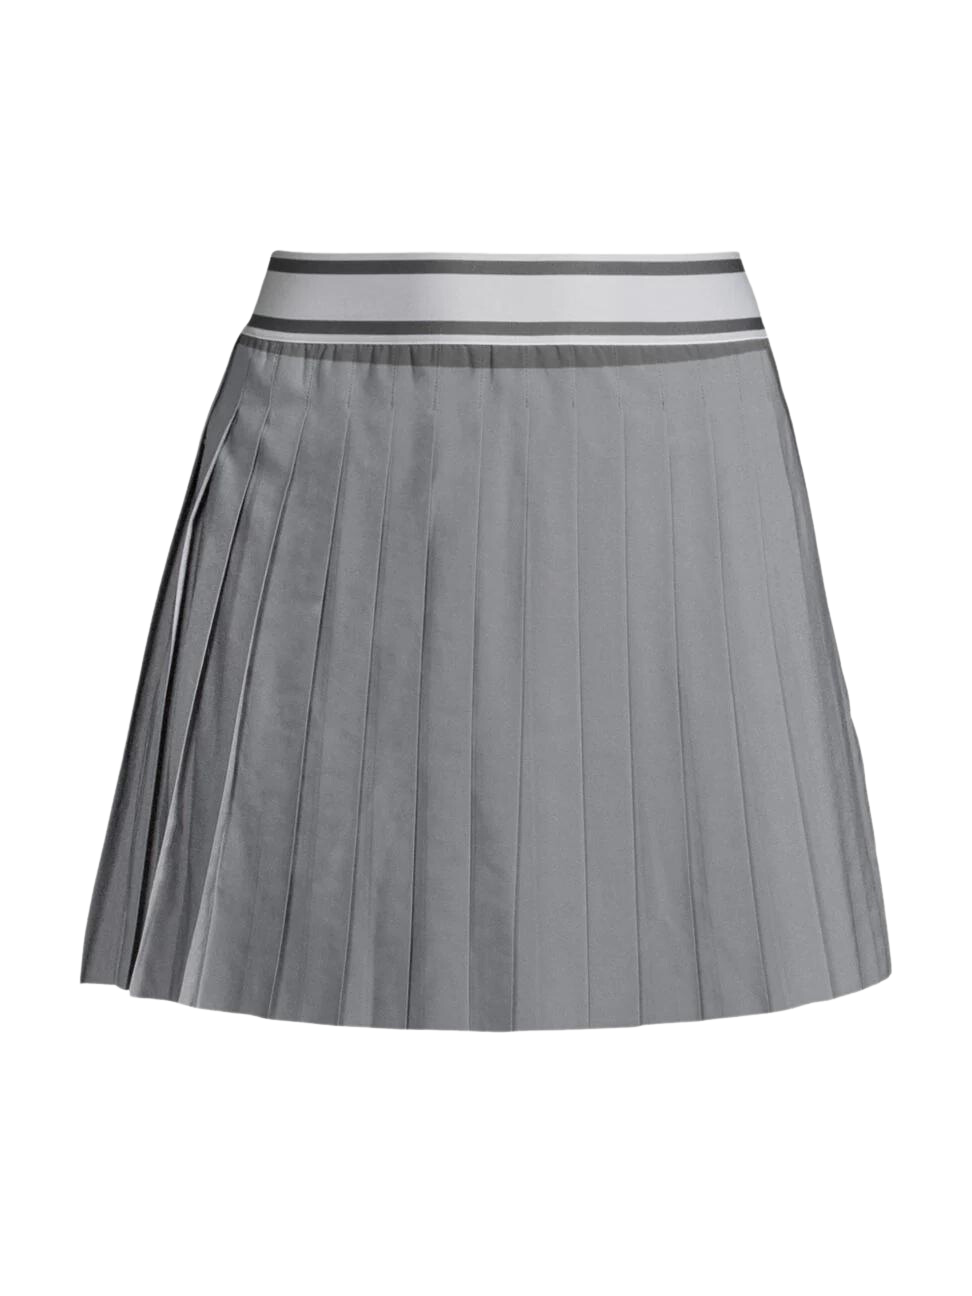 Greyson Leo Women's Skirt